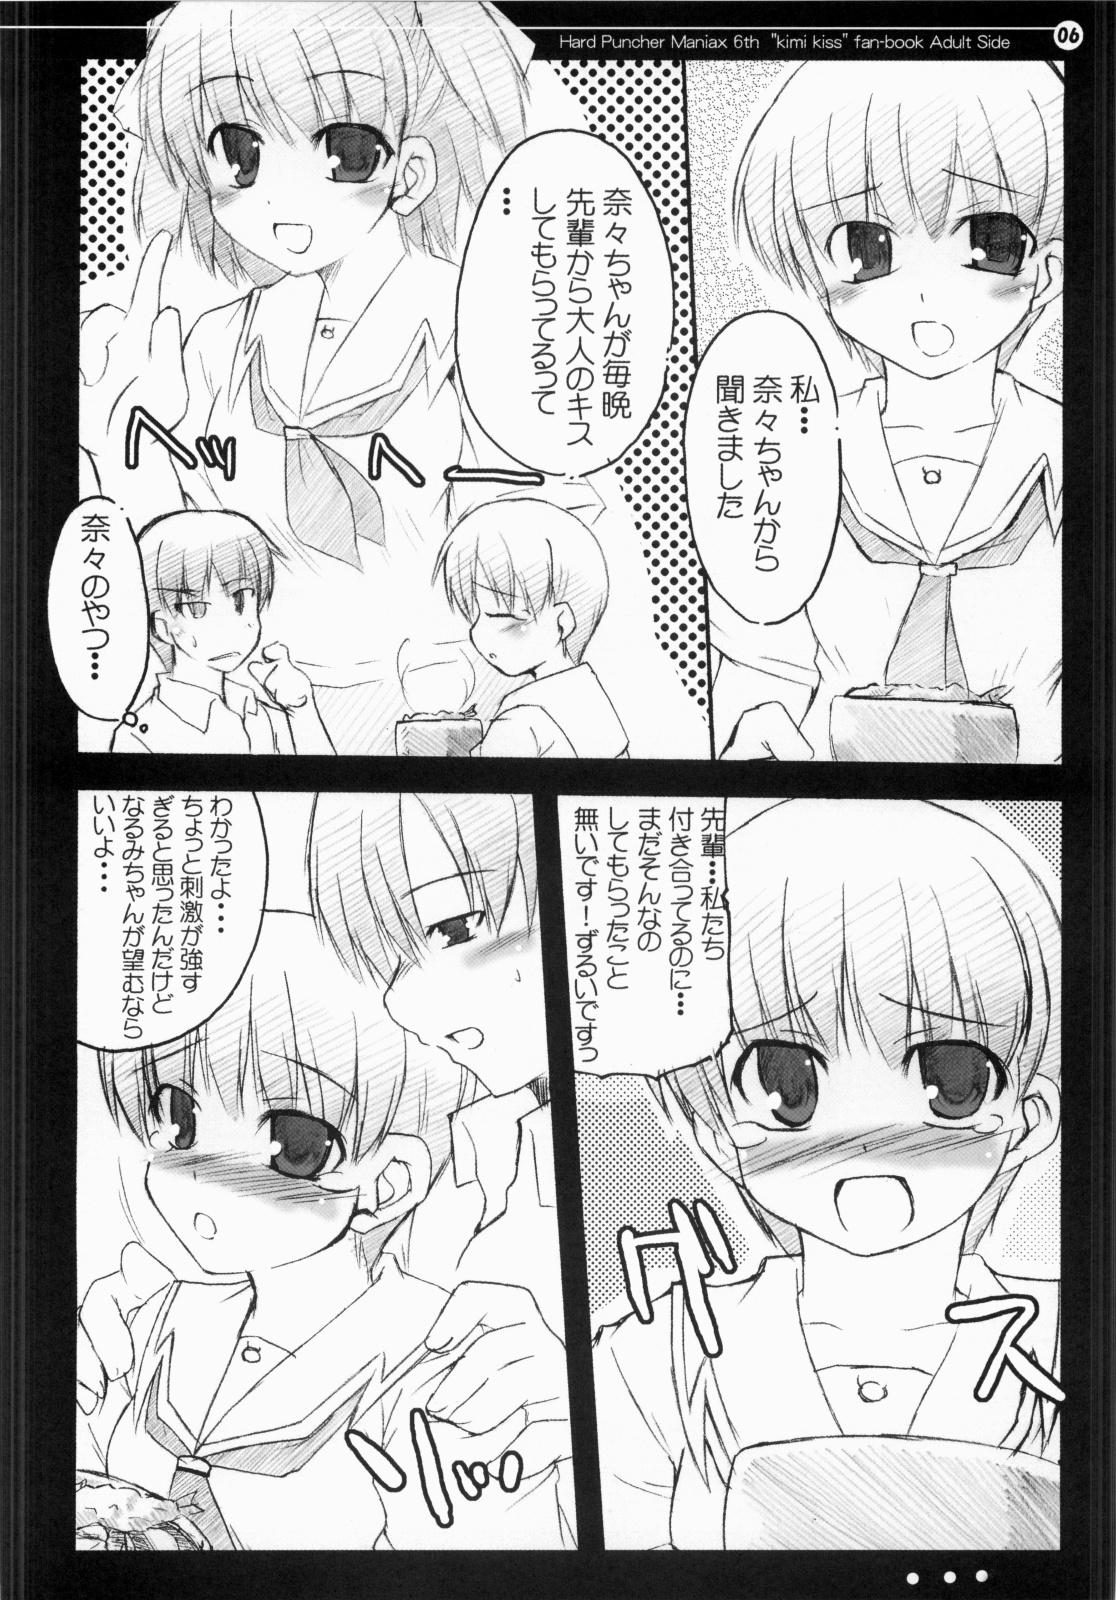 Twistys Nana to Narumi no Motto Kisu Shite!! - Kimikiss Cocks - Page 5